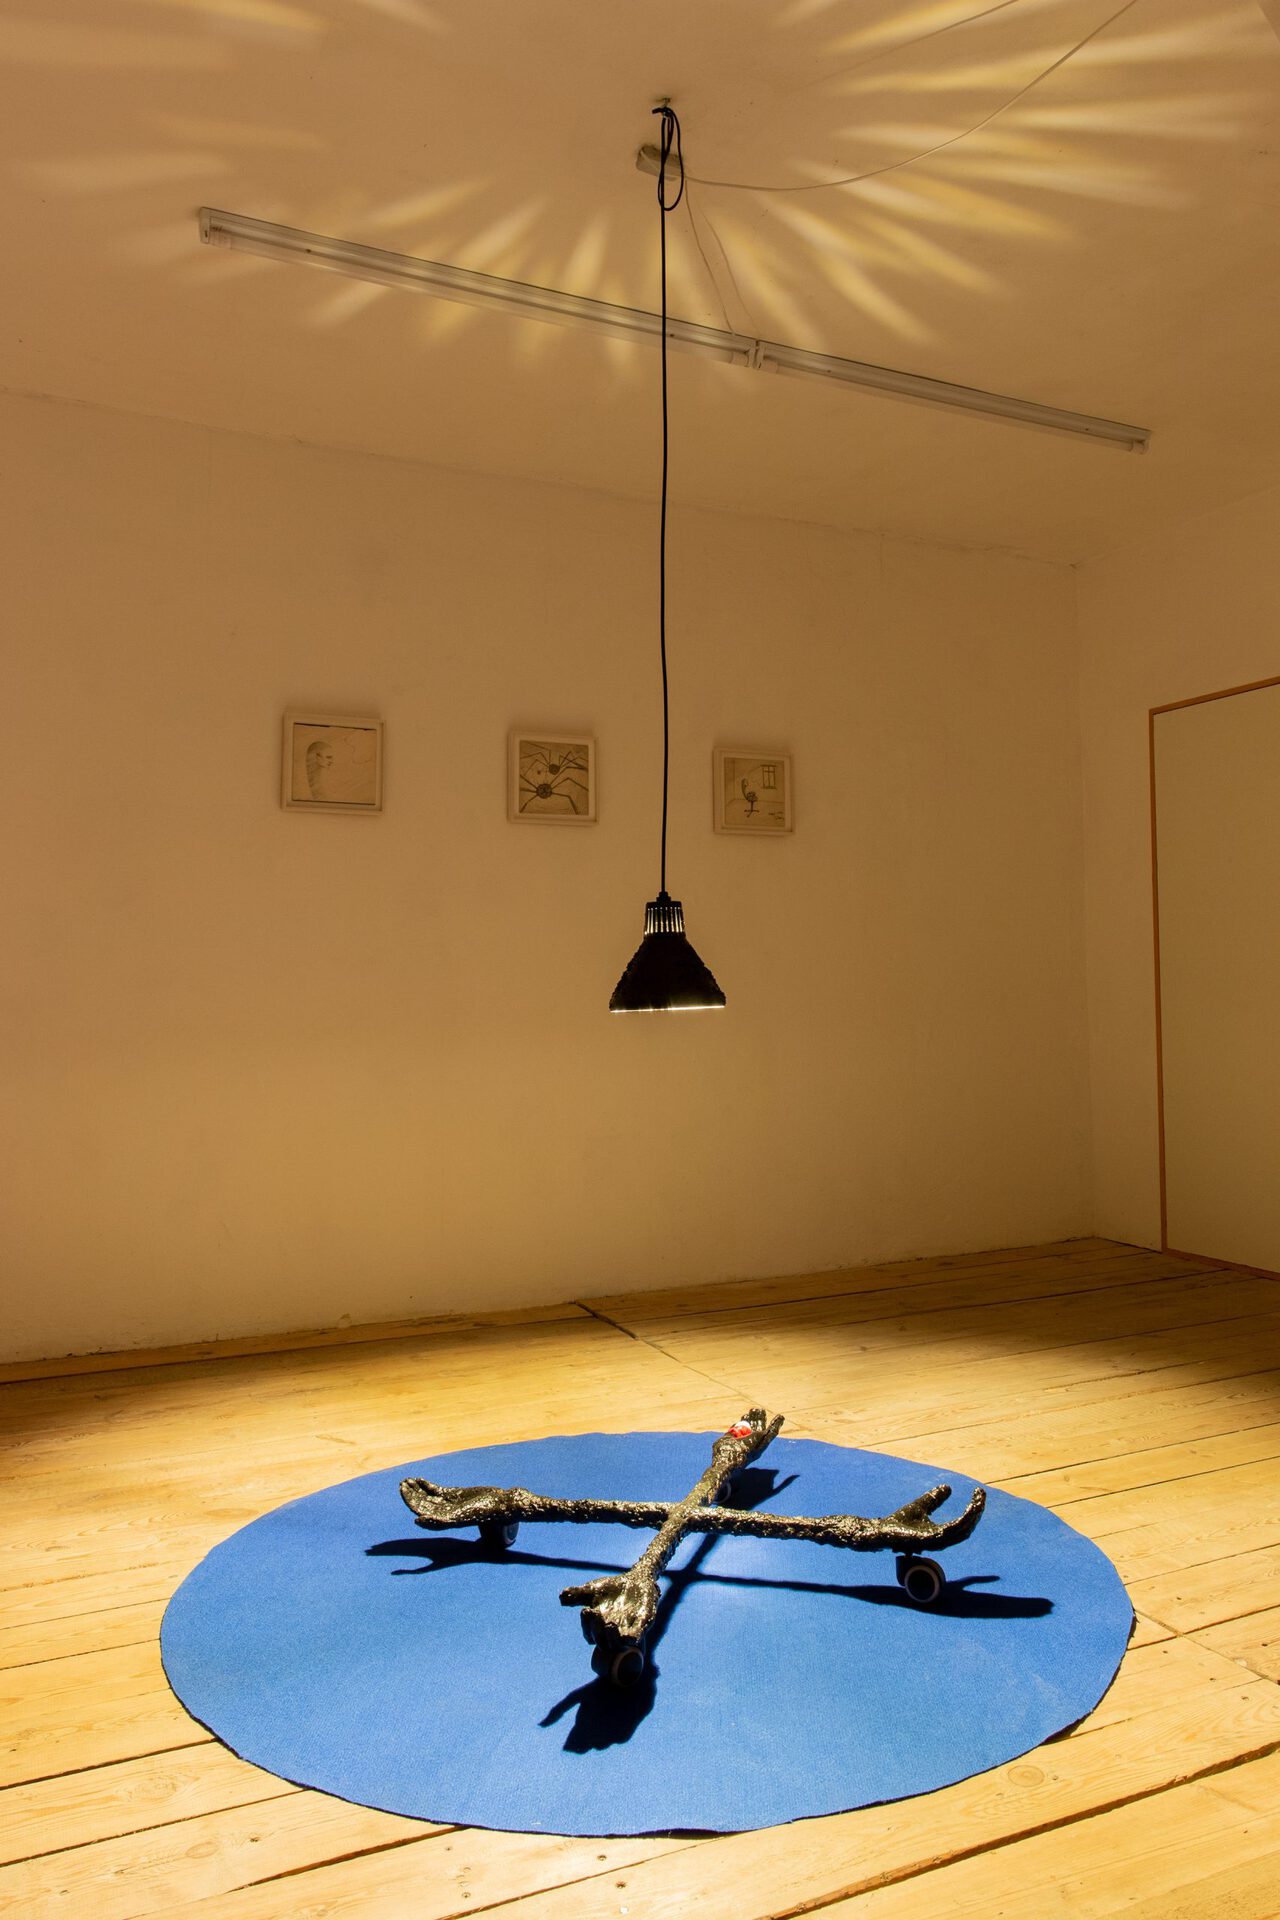 Rafał Żarski, Eye, hand, chair - exhibition view - Łęctwo gallery, 4